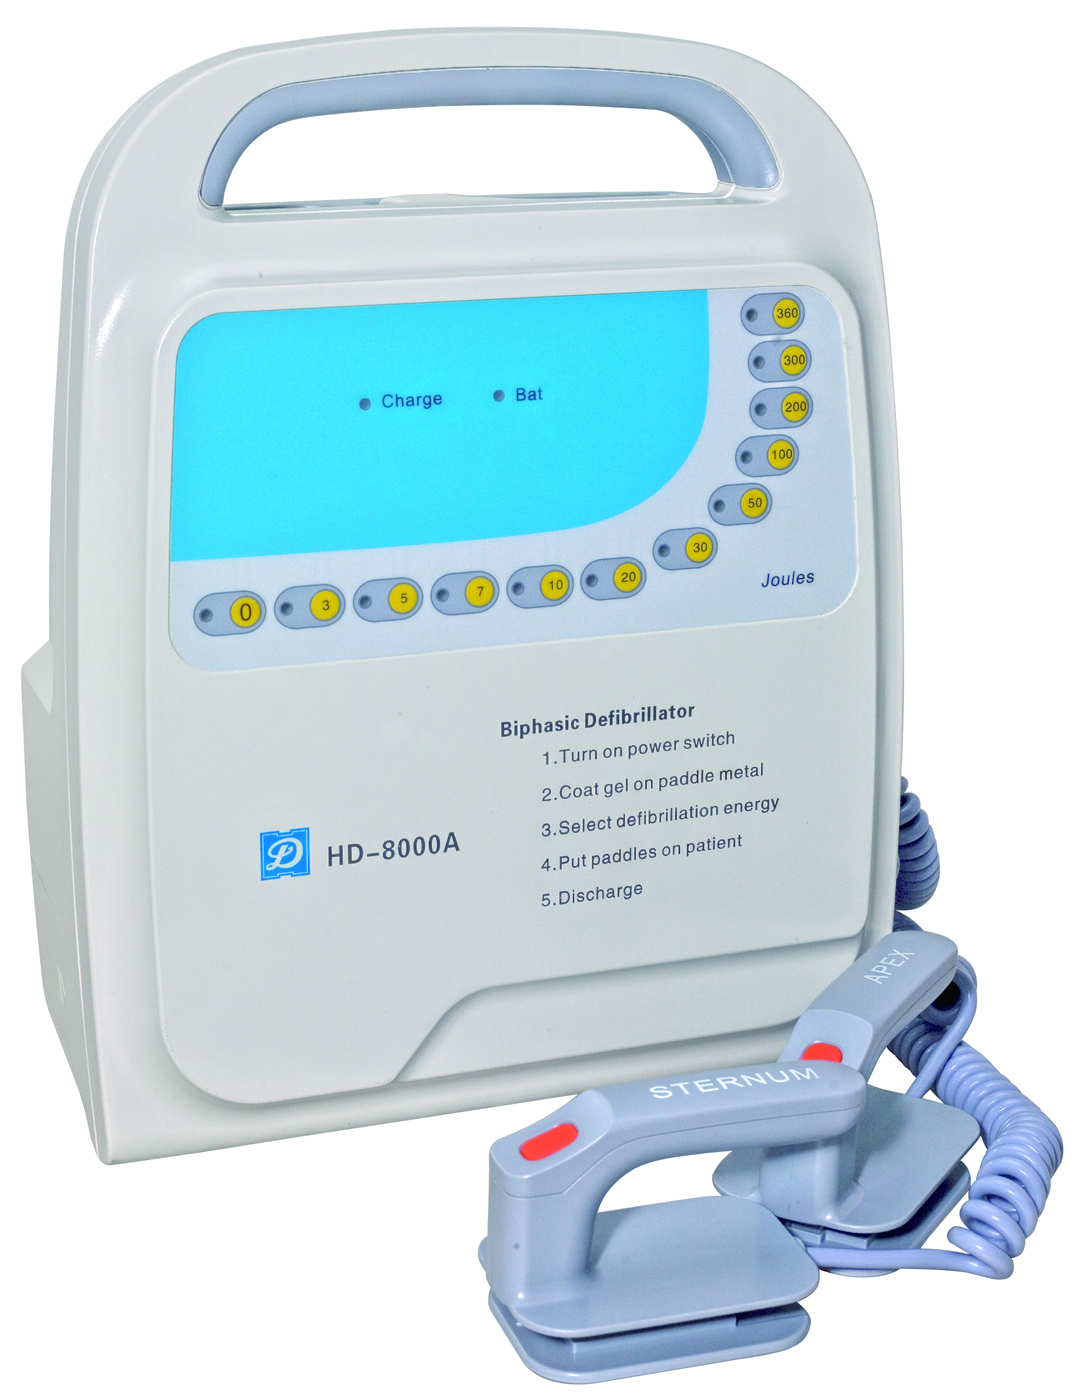 HD-8000A Defibrillator